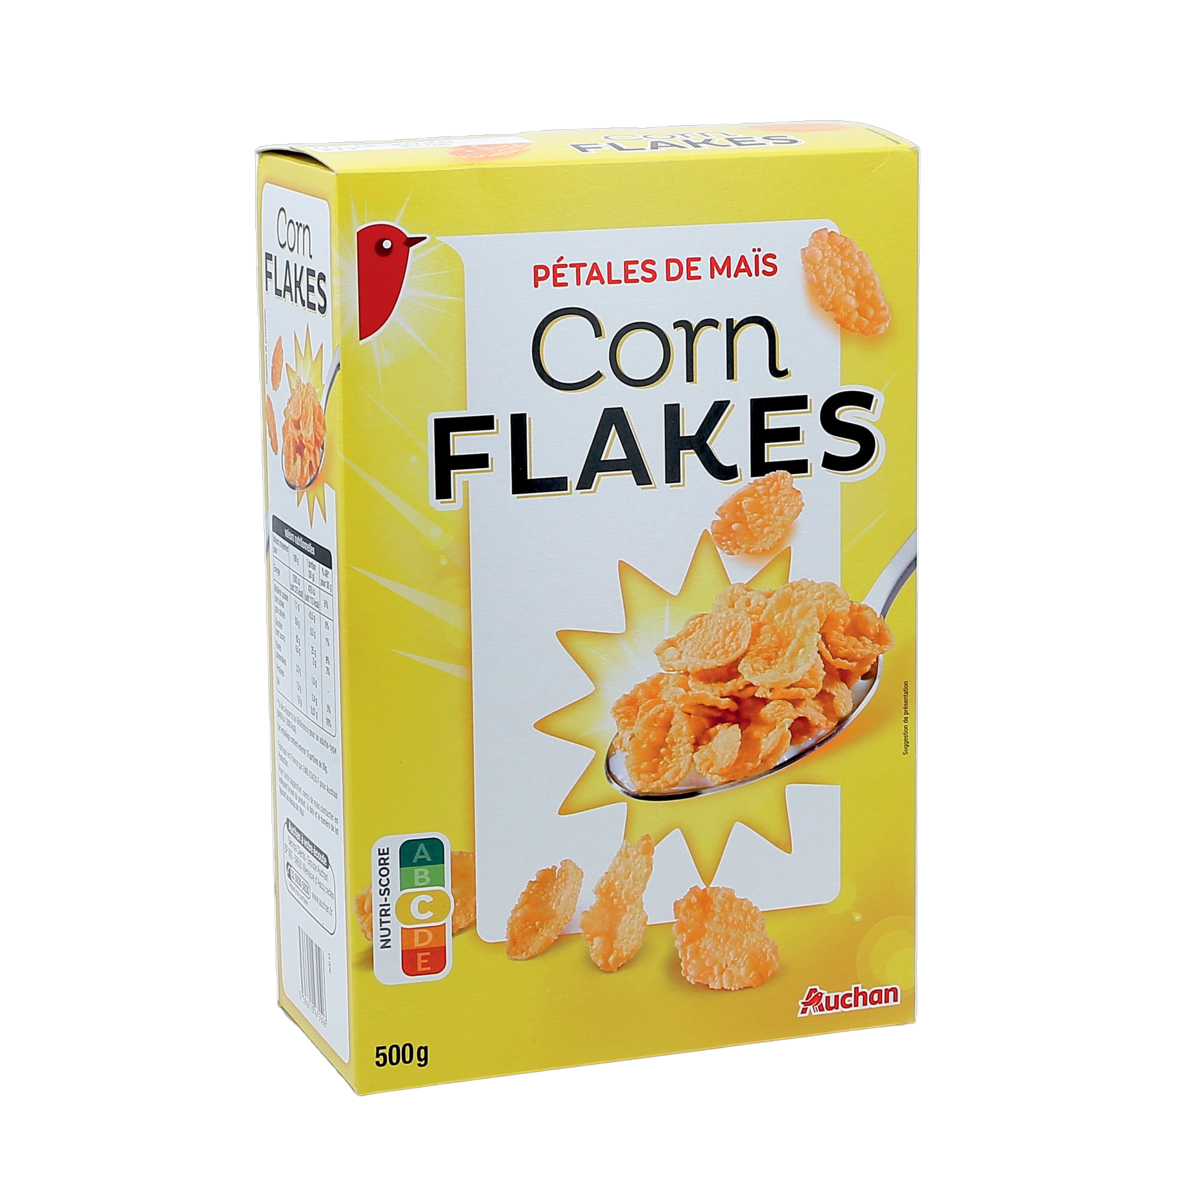 AUCHAN Corn flakes pétales de maïs 500g